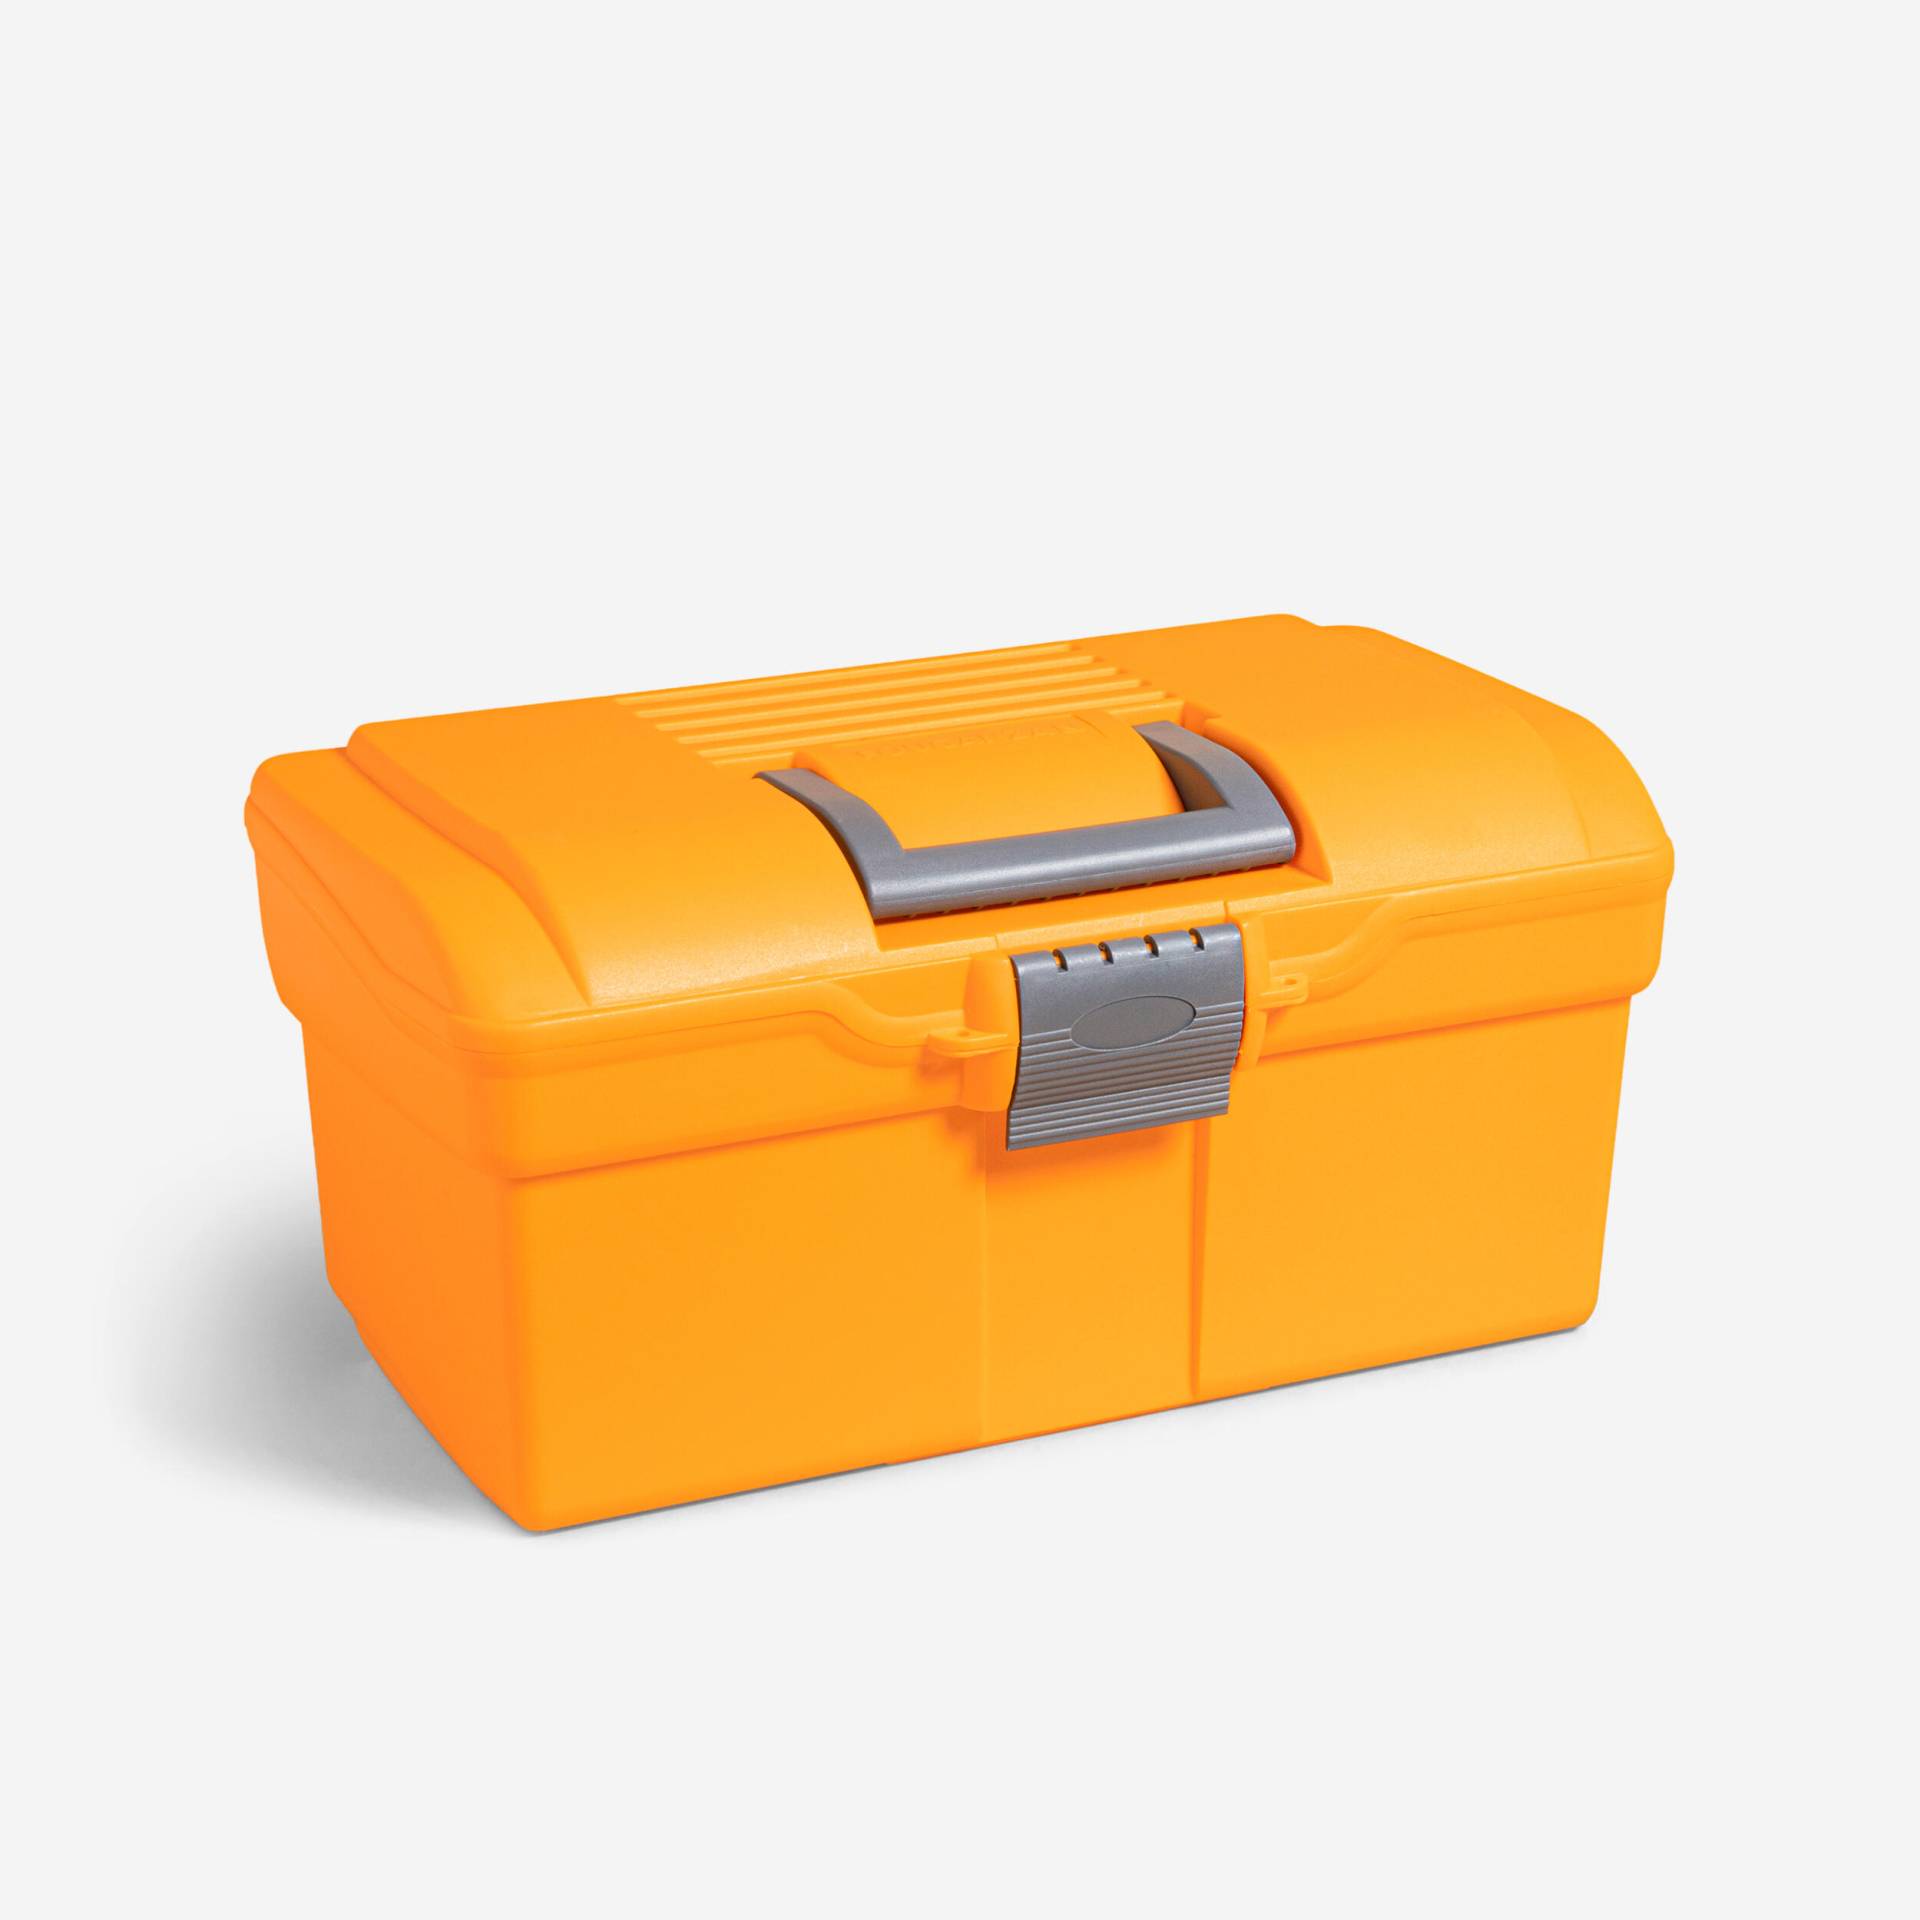 Putzkasten Putzbox 300 orange/grau von FOUGANZA